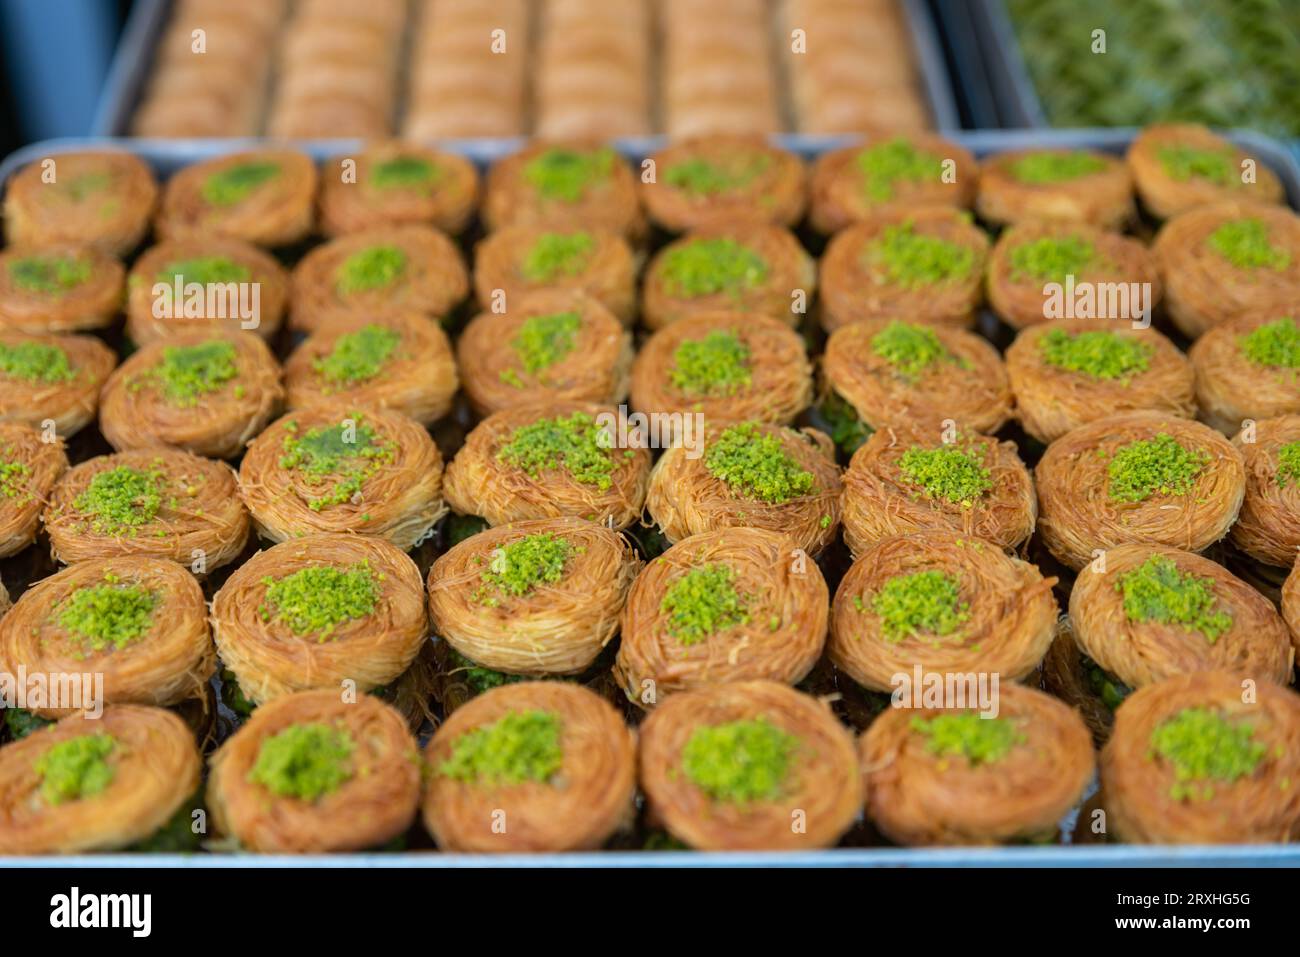 Baklava à la pistache. Saveurs traditionnelles du Moyen-Orient. Le nom local de Baklava est Fistikli Baklava. Baklava turc traditionnel et délicieux. Haute qua Banque D'Images